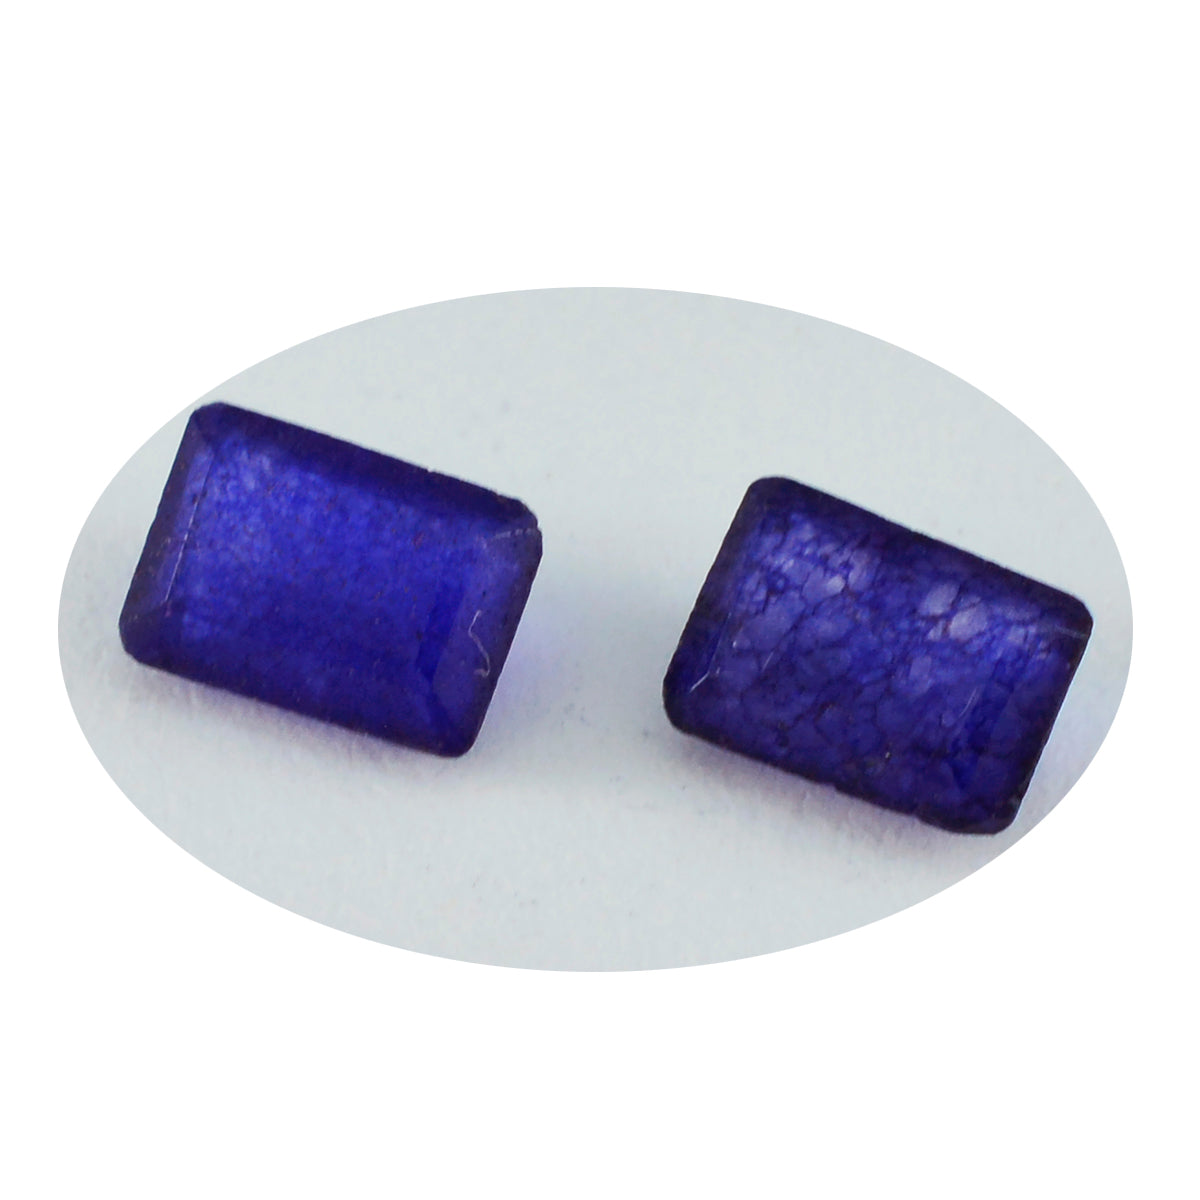 riyogems 1 pz autentico diaspro blu sfaccettato 6x8 mm forma ottagonale pietra preziosa sciolta di bella qualità